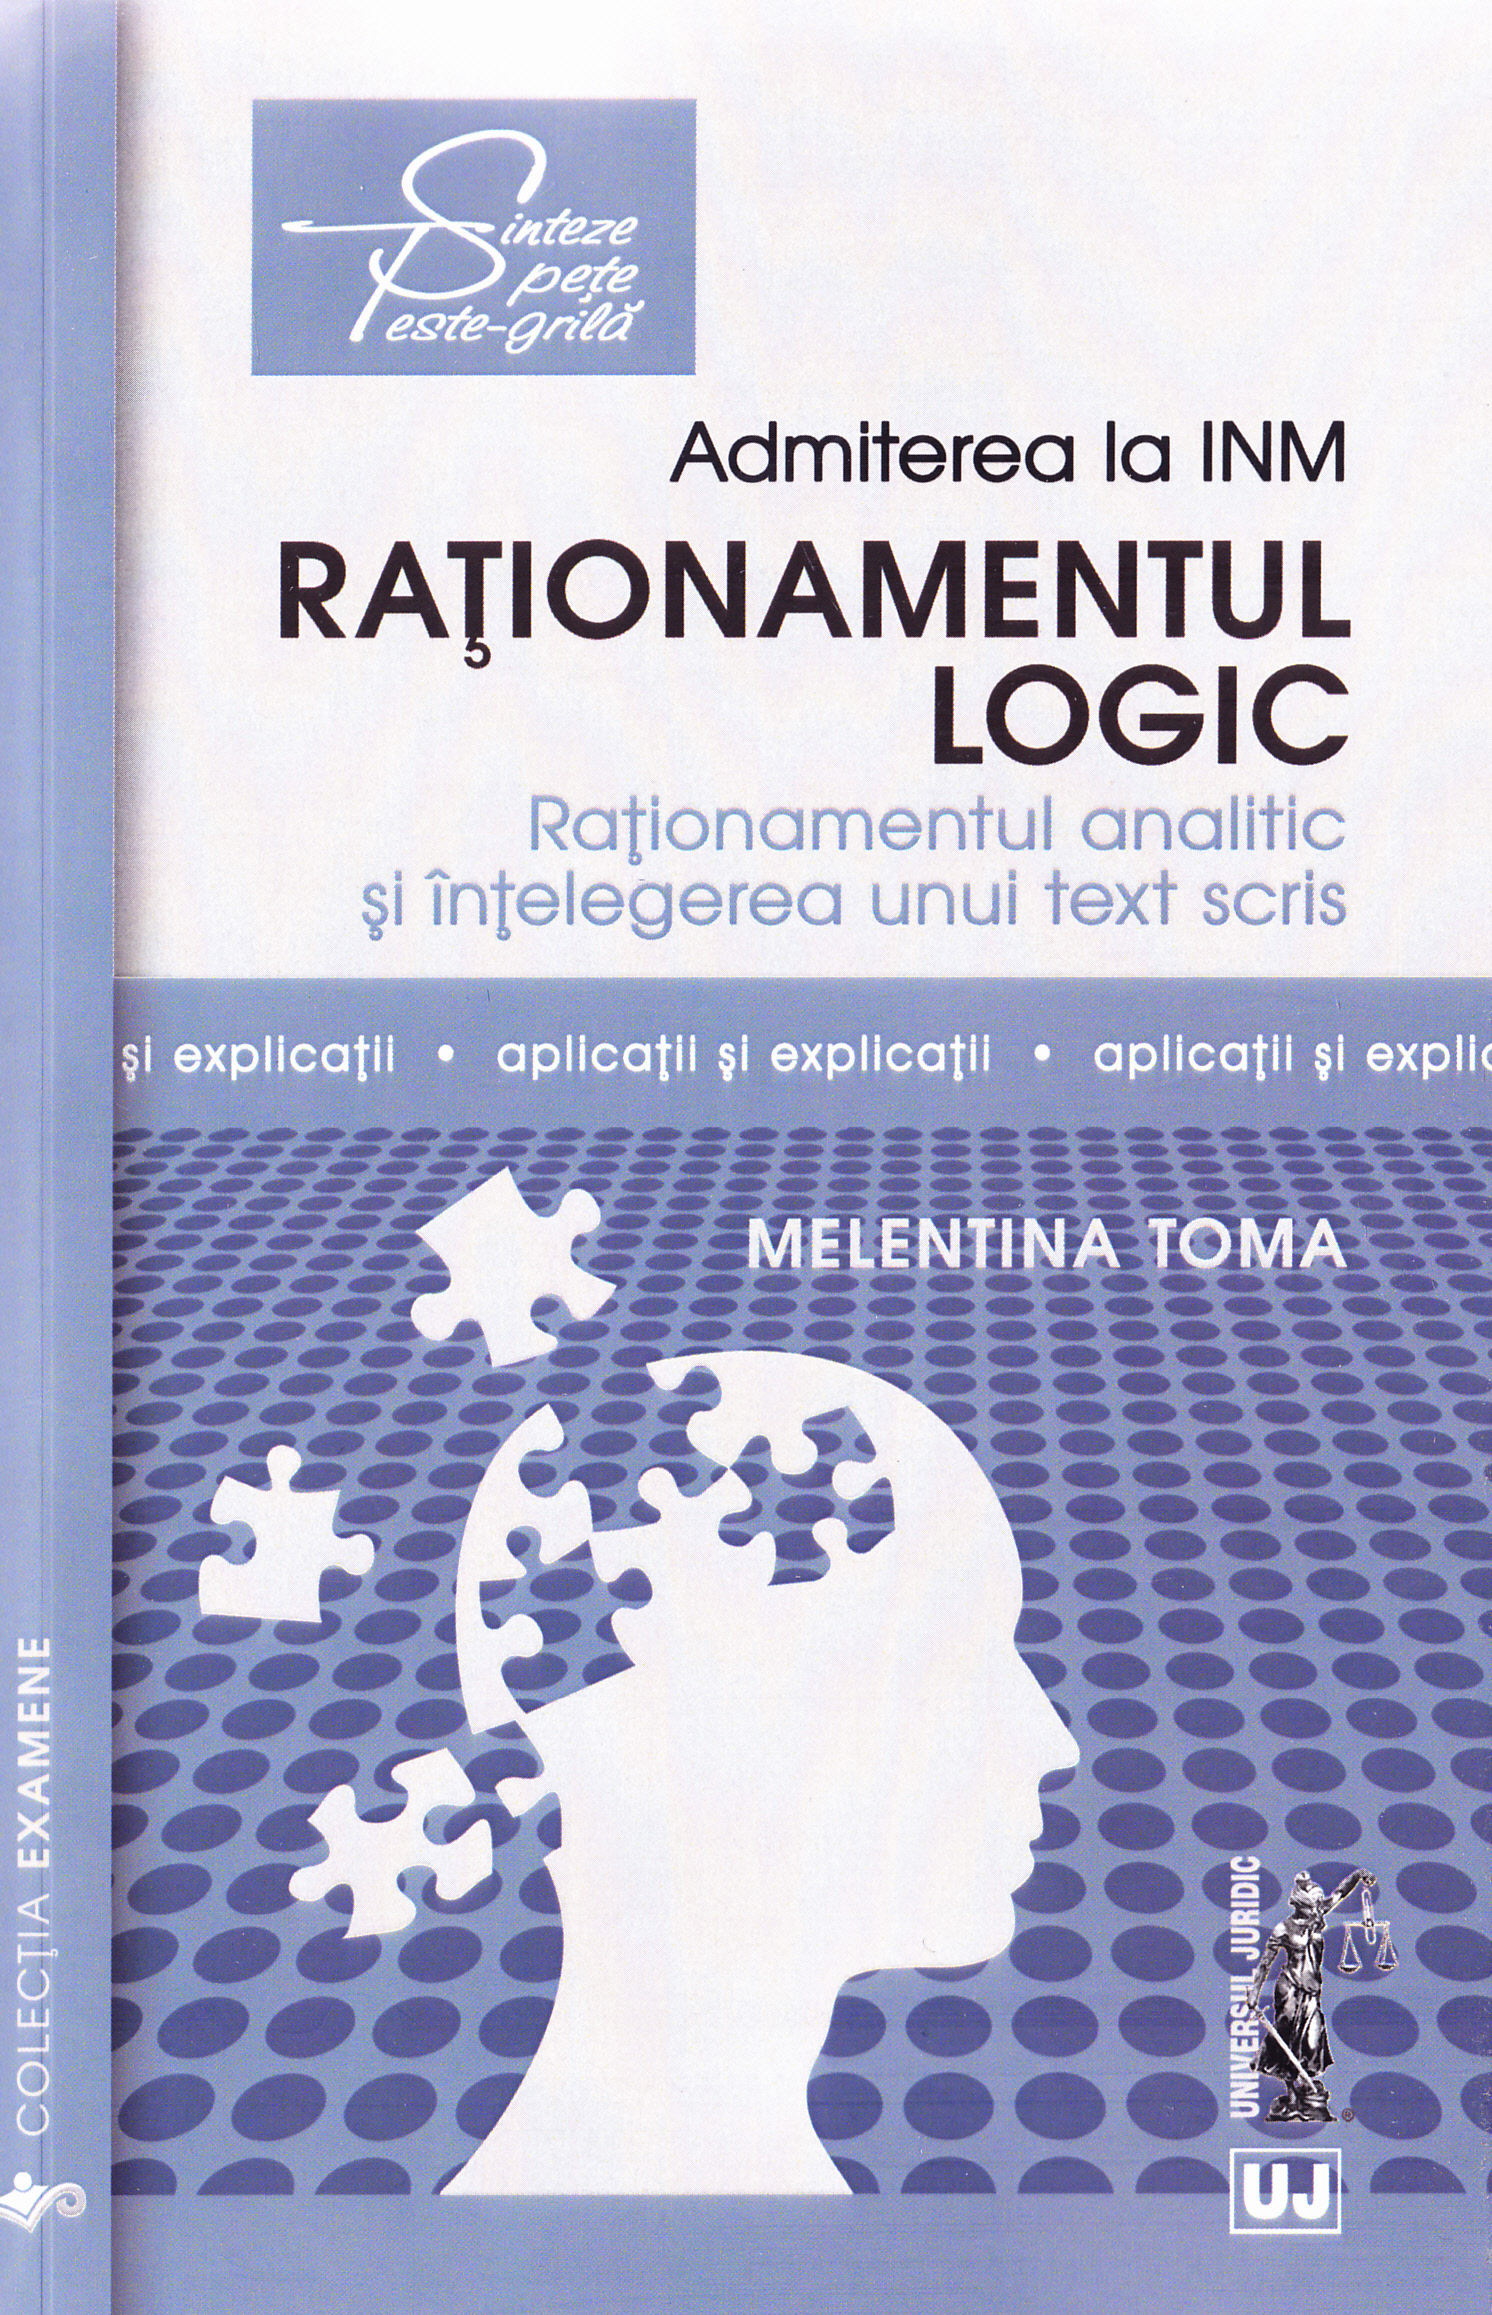 Admiterea la INM: Rationamentul logic - Melentina Toma